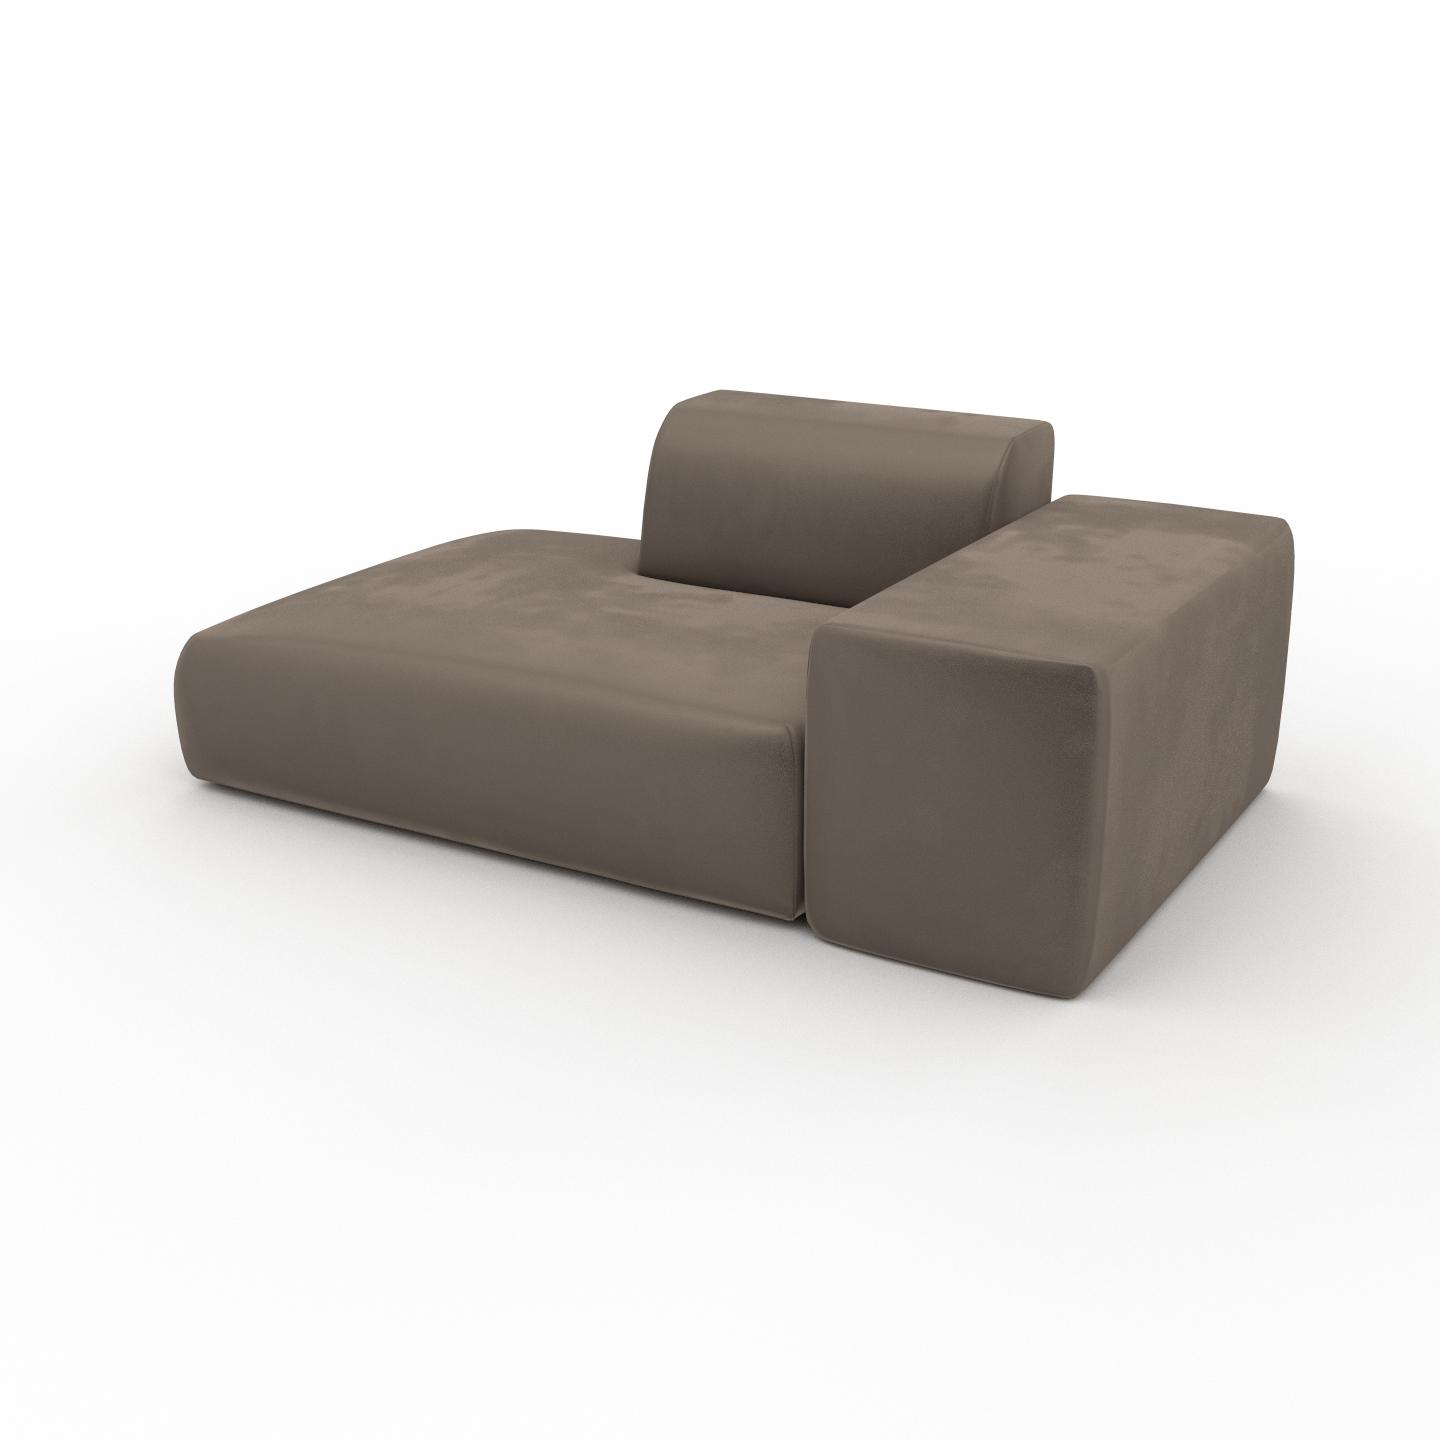 MYCS Sofa Samt Cremebeige - Moderne Designer-Couch: Hochwertige Qualität, einzigartiges Design - 182 x 72 x 107 cm, Komplett anpassbar